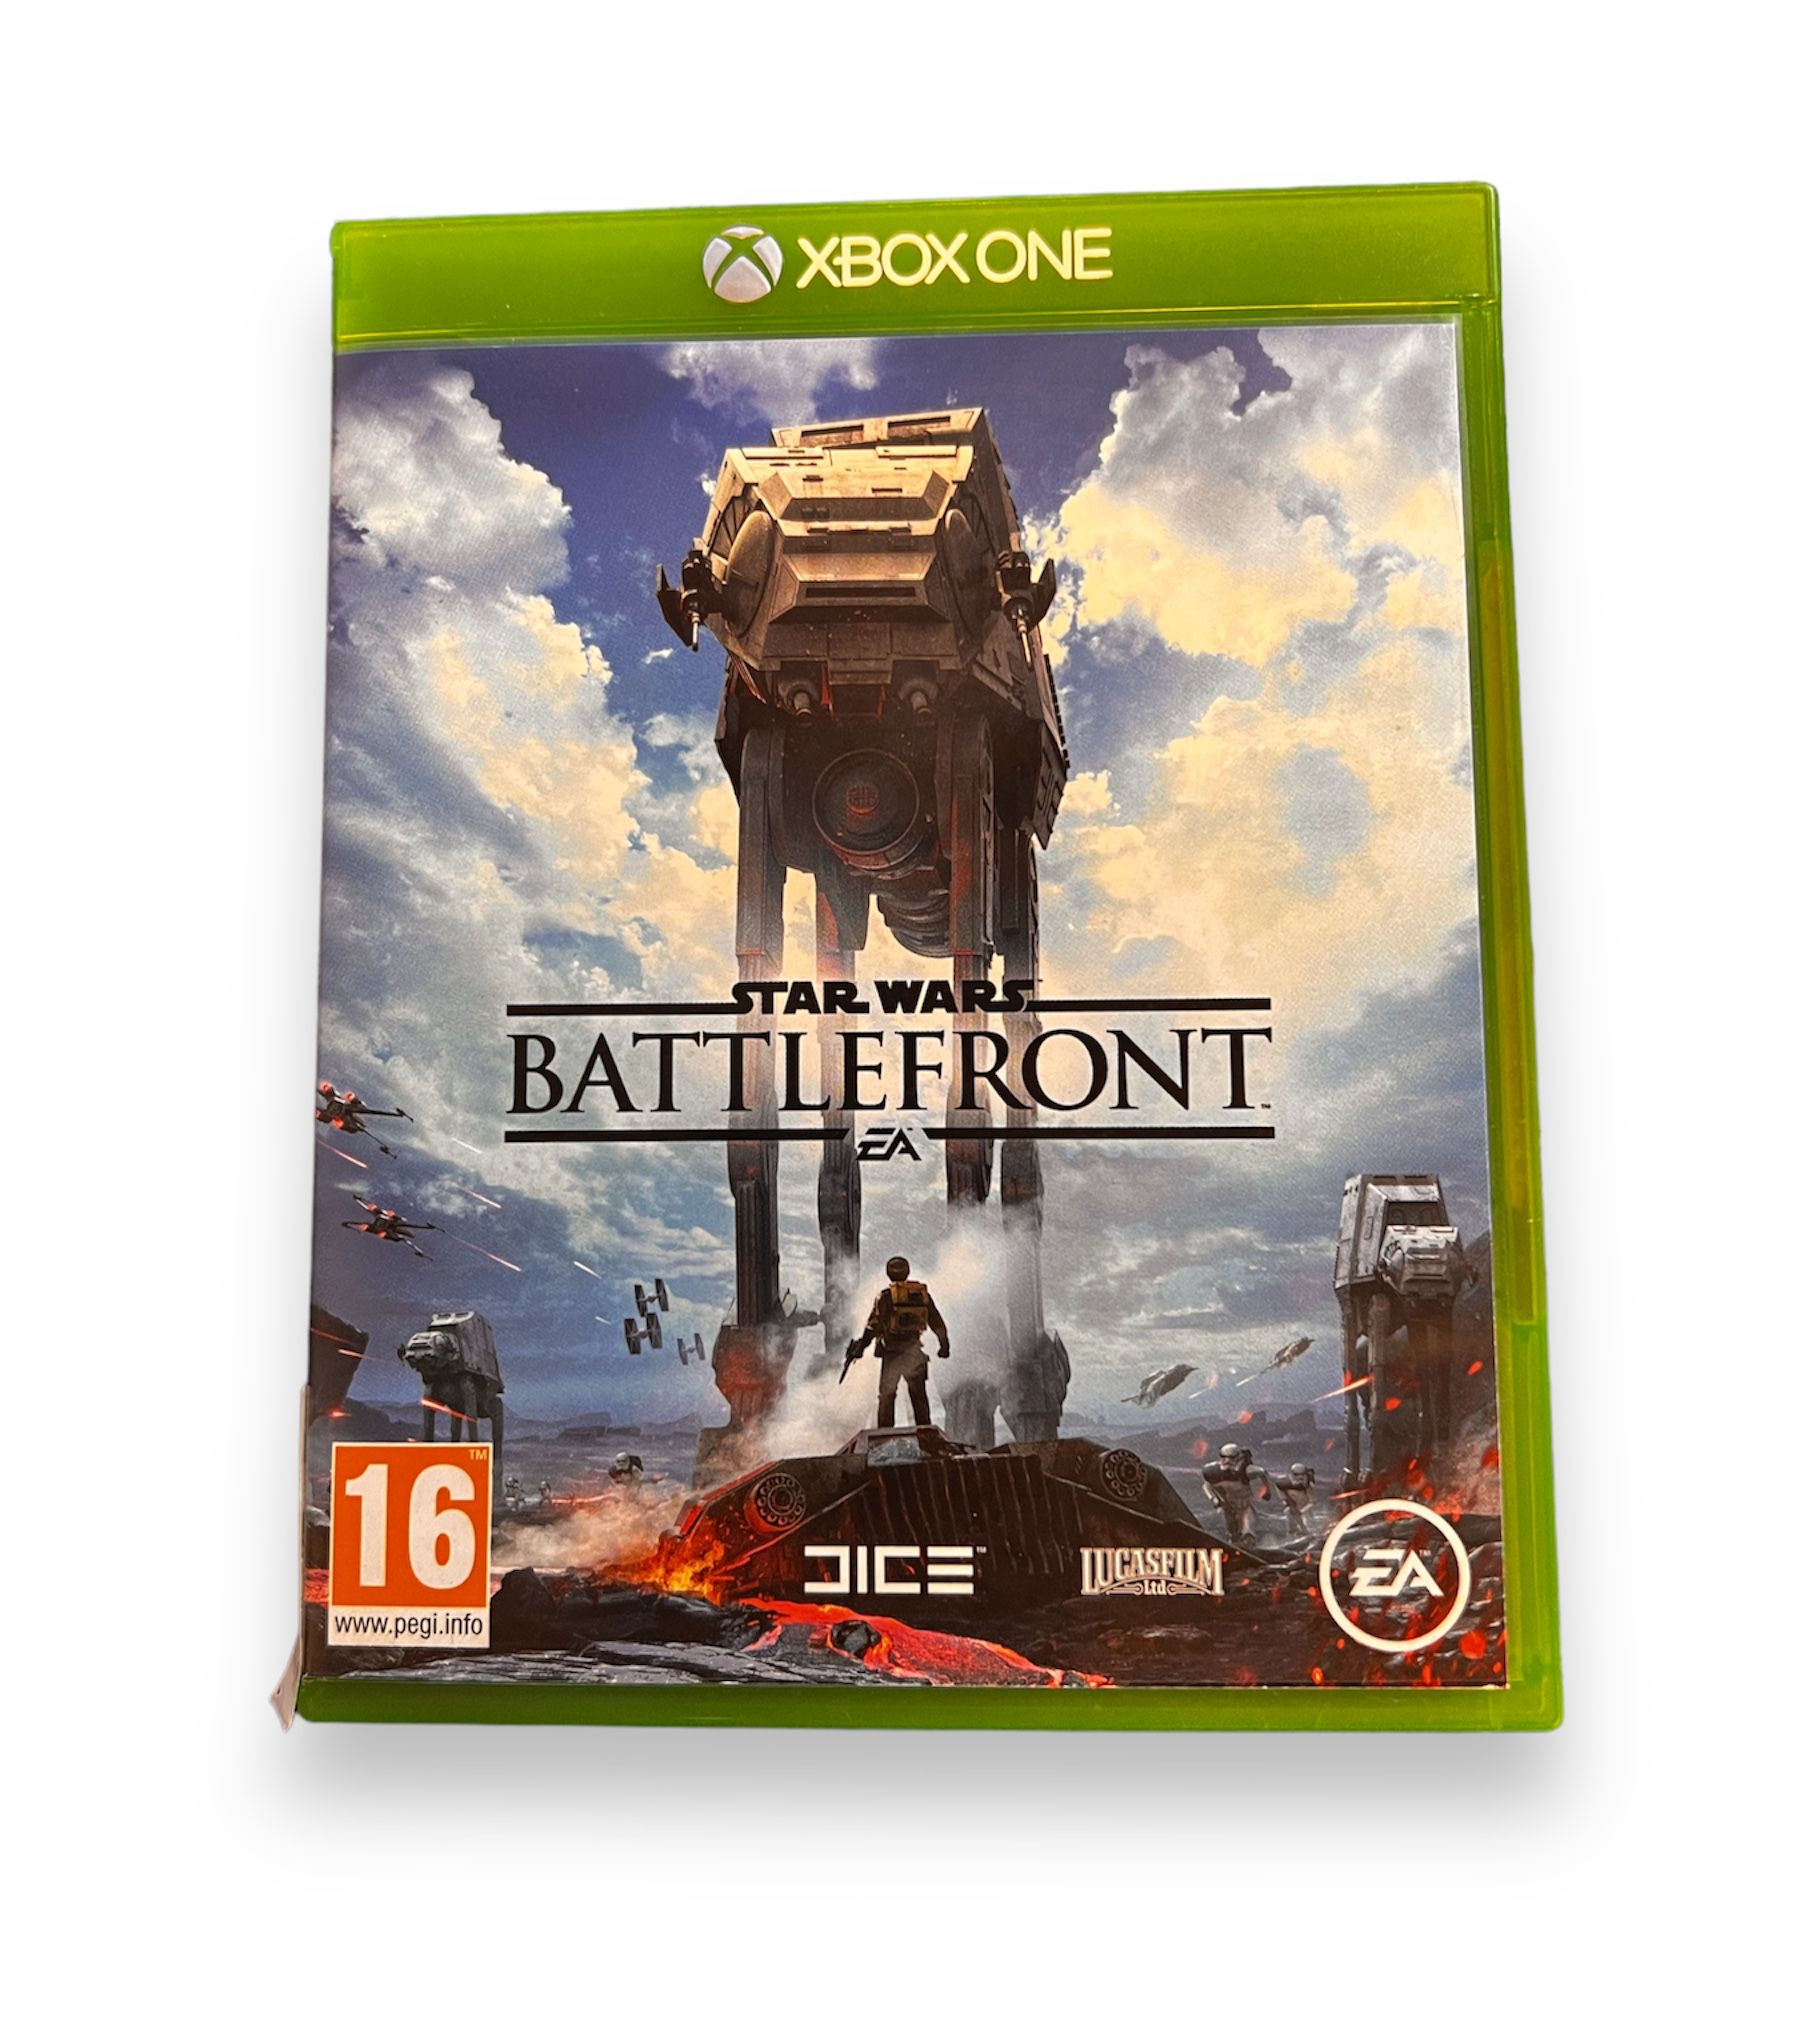 Star Wars Battlefront Xbox One game